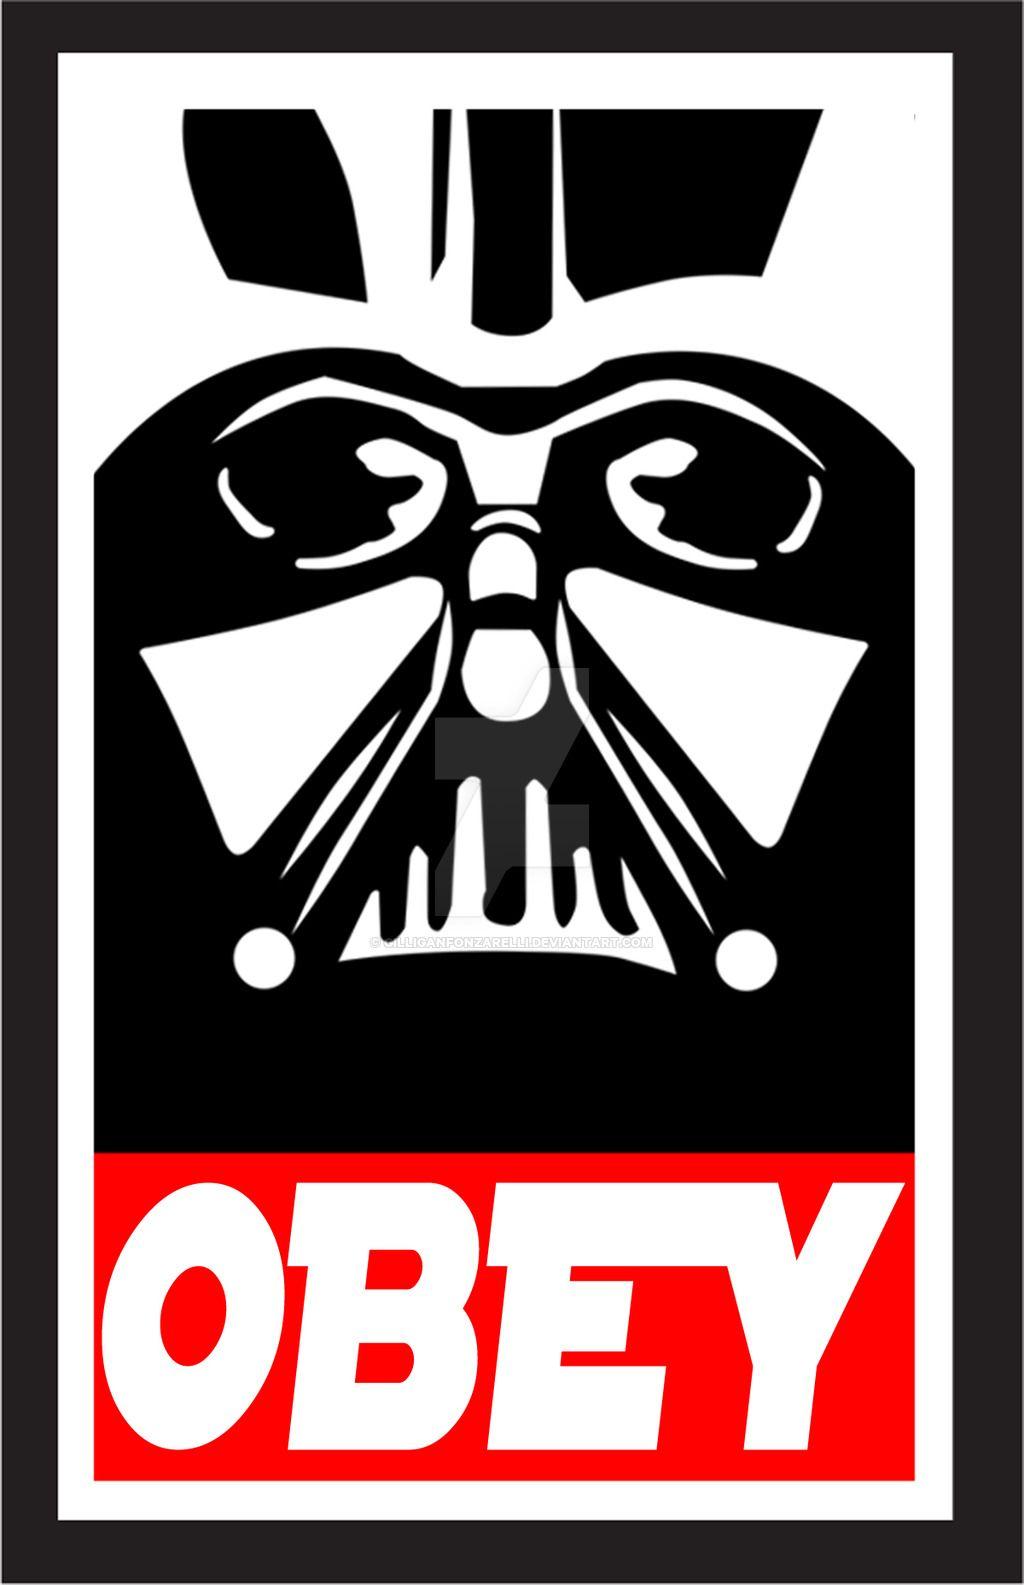 Obey Logo - Obey Logos